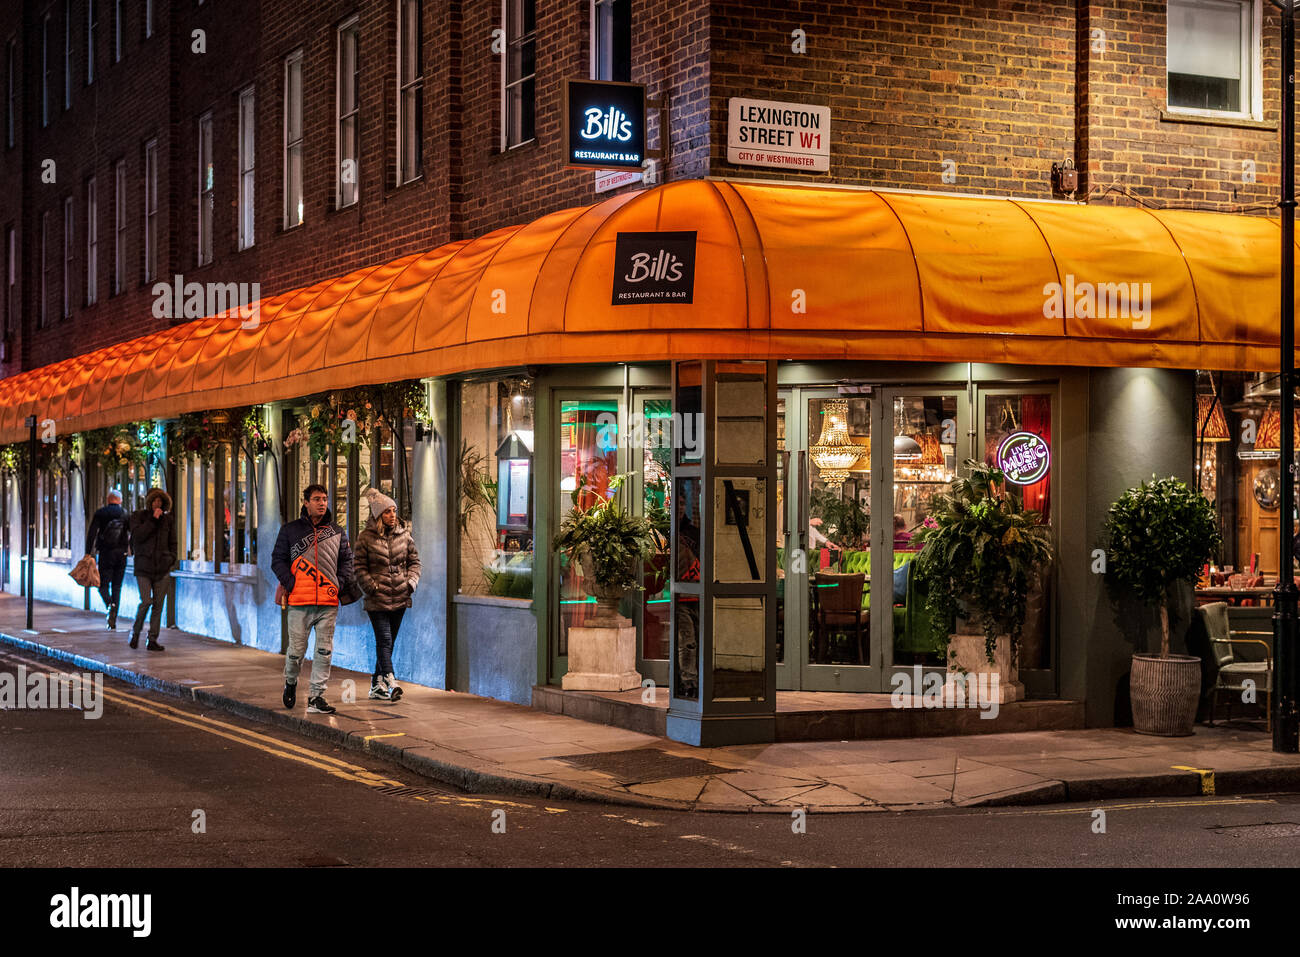 Fatture ristorante Cafe su Brewer street nel quartiere di Soho nel West End di Londra Foto Stock